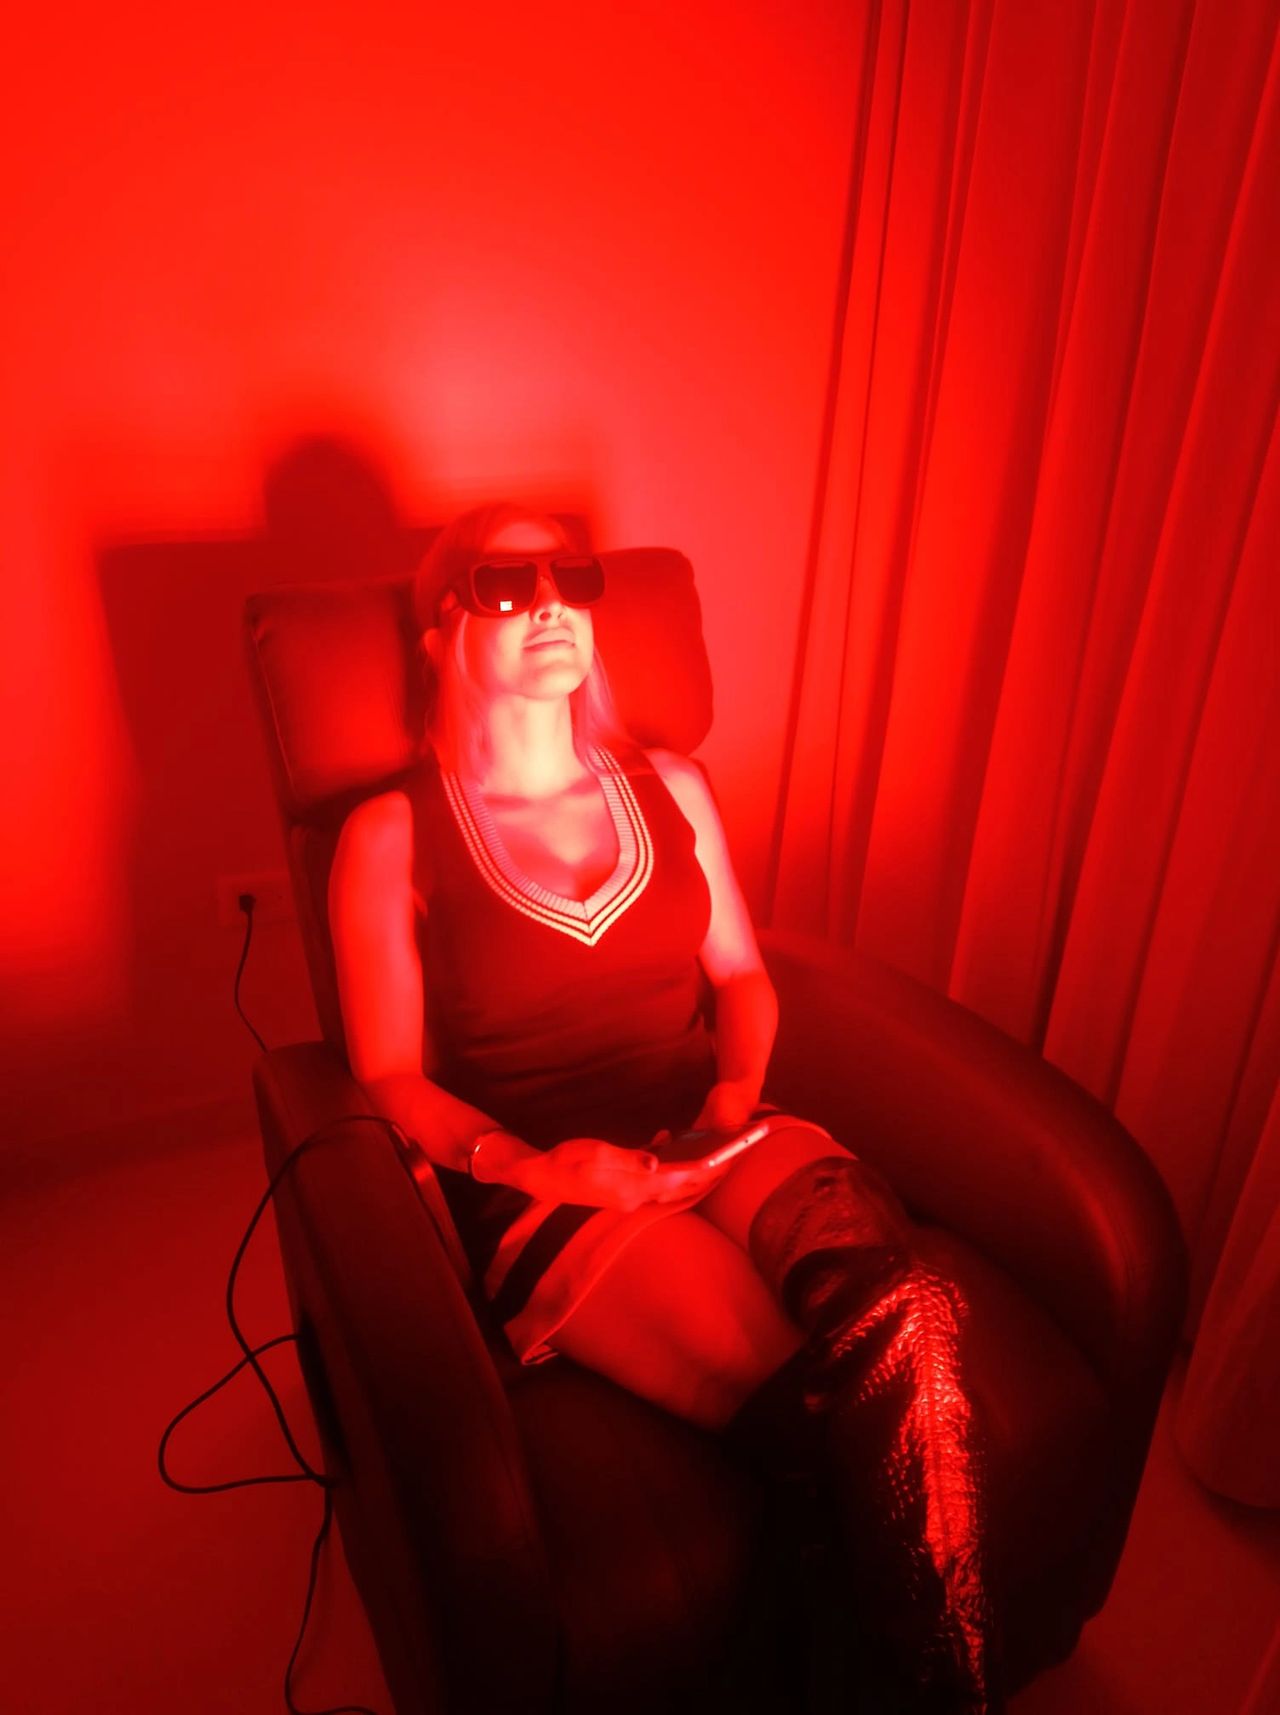 La terapia de luz infrarroja podría mejorar la memoria en la demencia